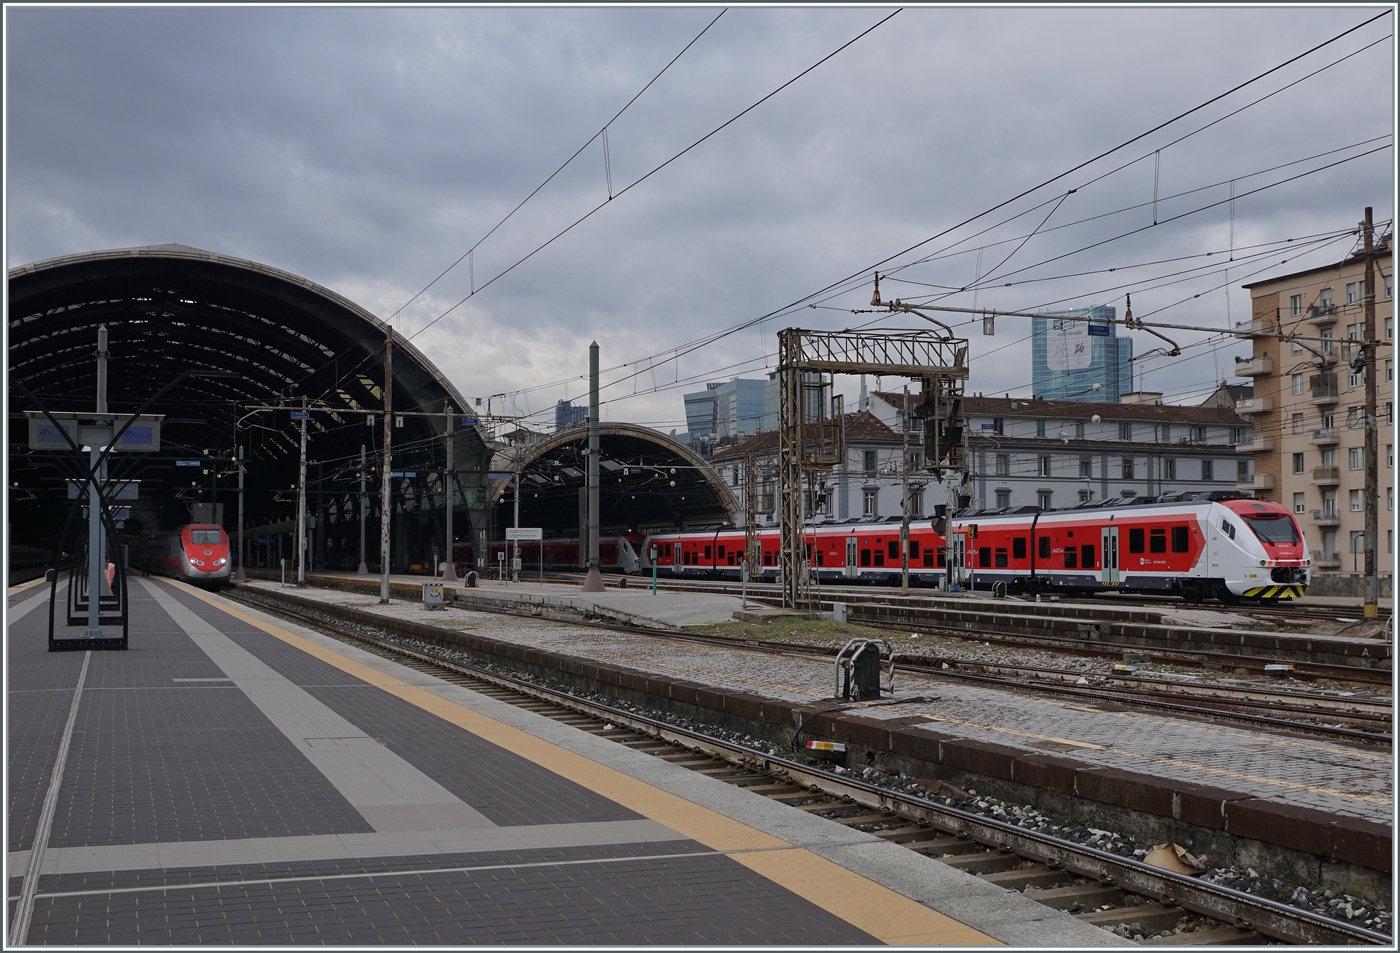 ie Trenord Milano - Malpensa Flughafenzüge verkehren in einer nun rot/weissen Farbgebung.

8. Nov. 2022